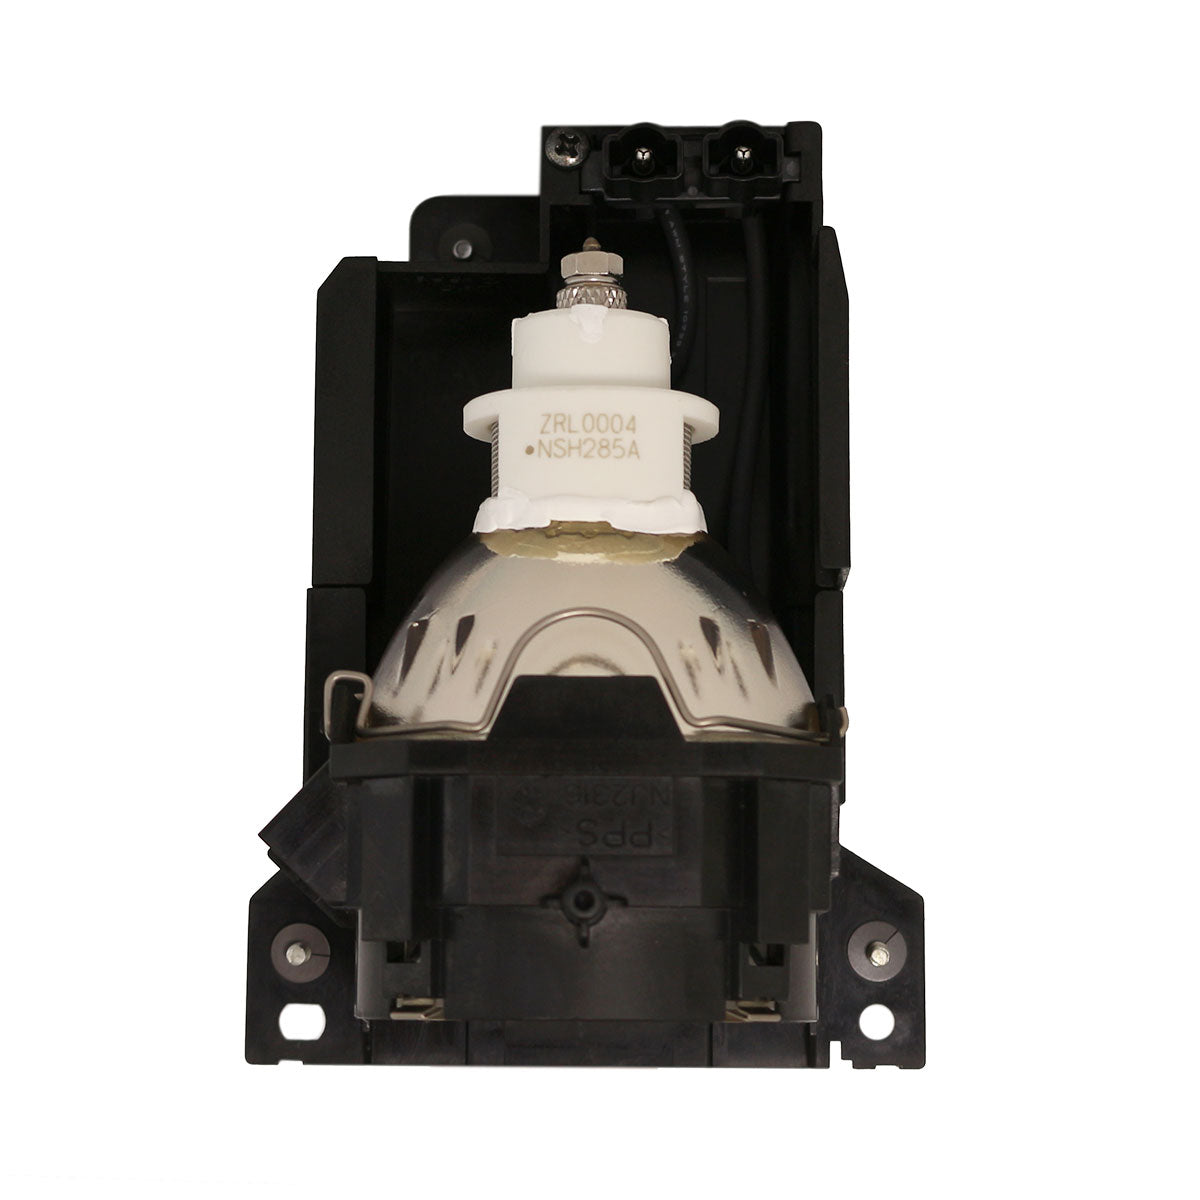 Dukane 456-8943 Ushio Projector Lamp Module